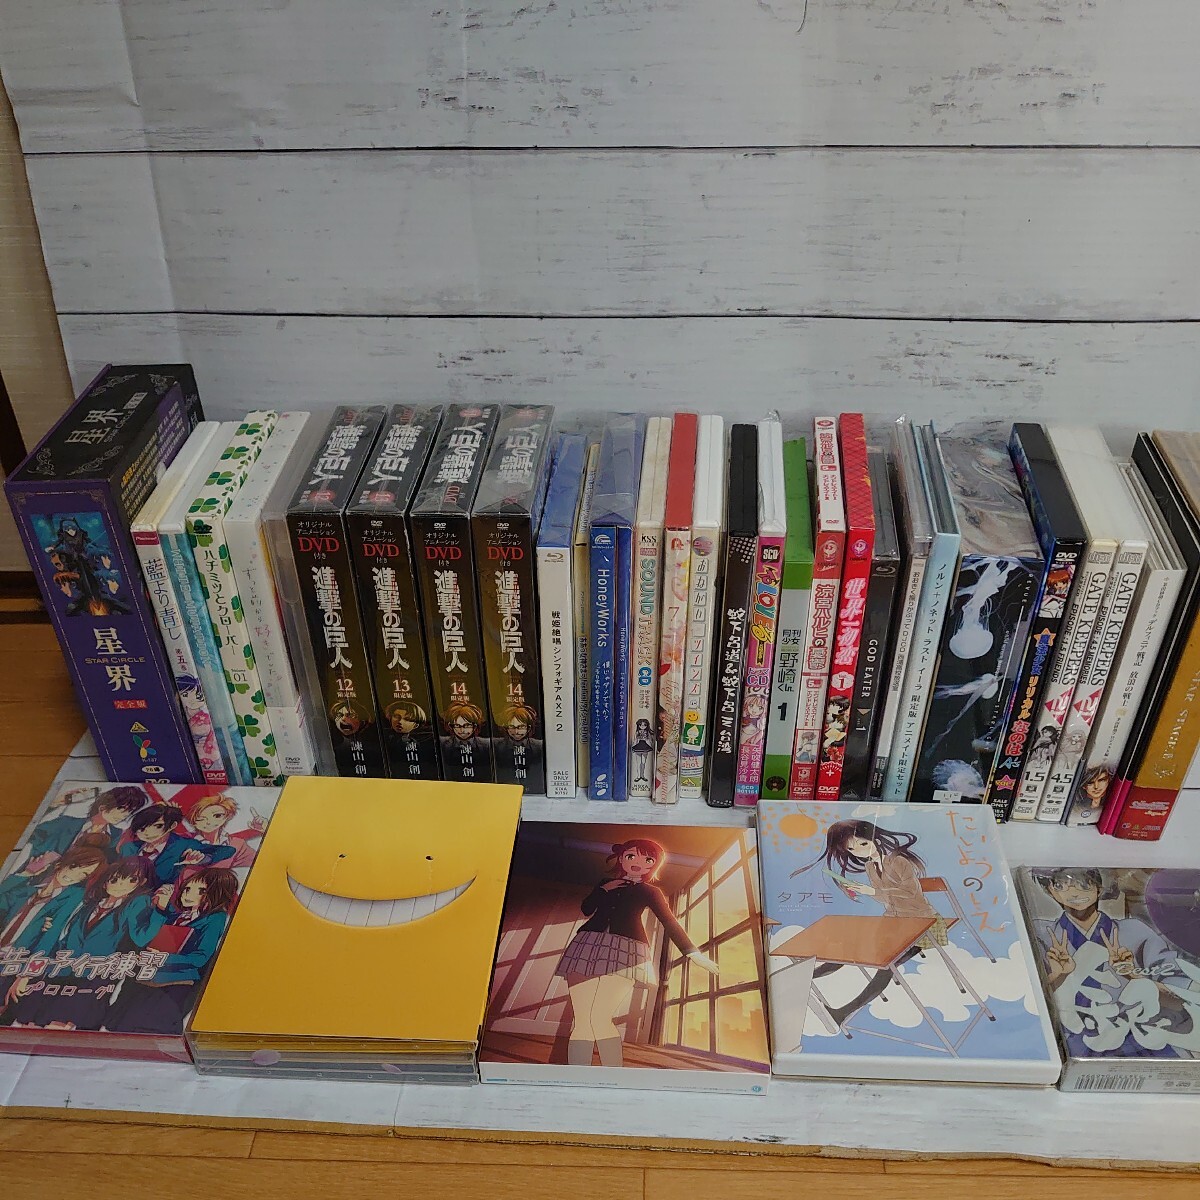 1 иен старт DVD CD аниме много продажа комплектом ... . человек мед . clover Gintama Suzumiya Haruhi no Yuutsu ограничение запись текущее состояние доставка Junk 